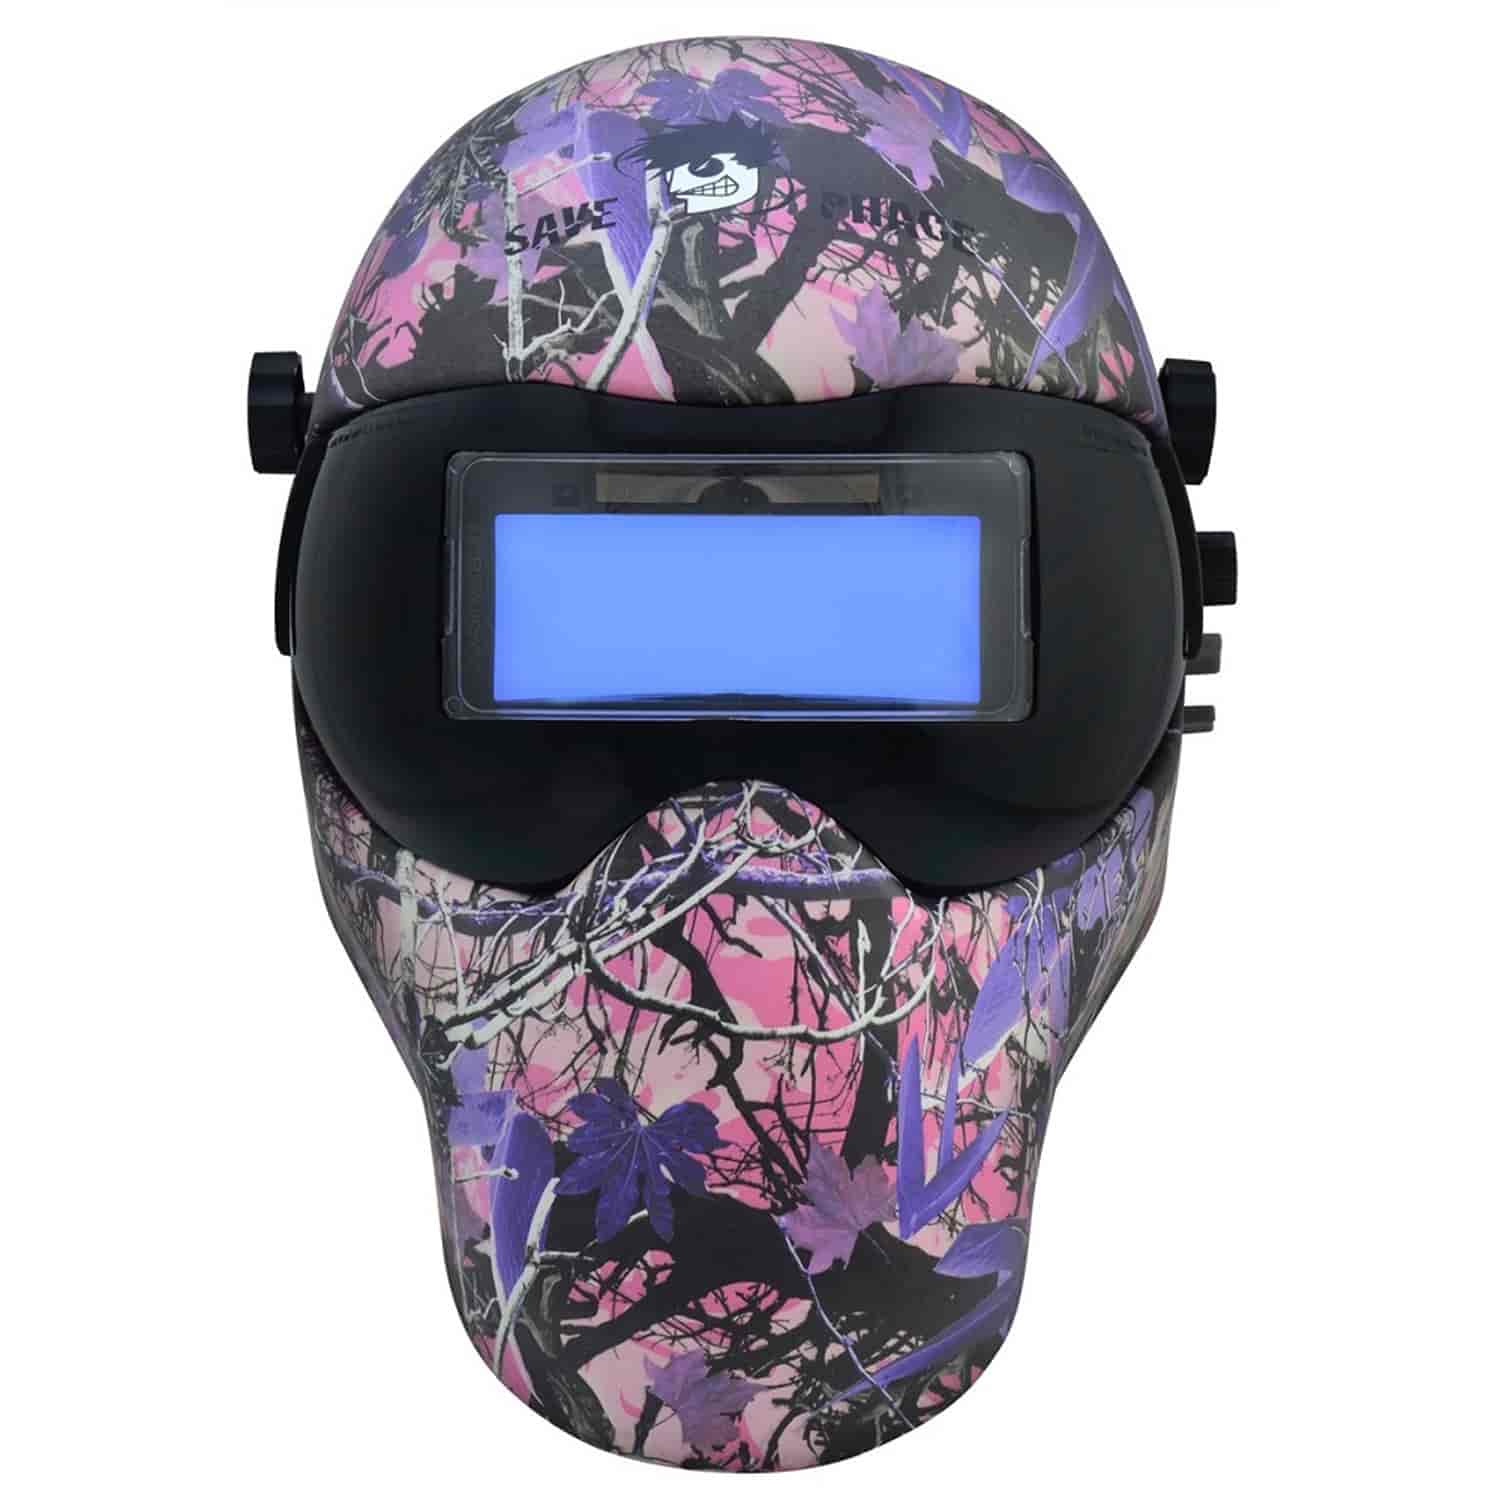 EFP E Series Welding Helmet with Custom "Hidden Agenda" Graphics